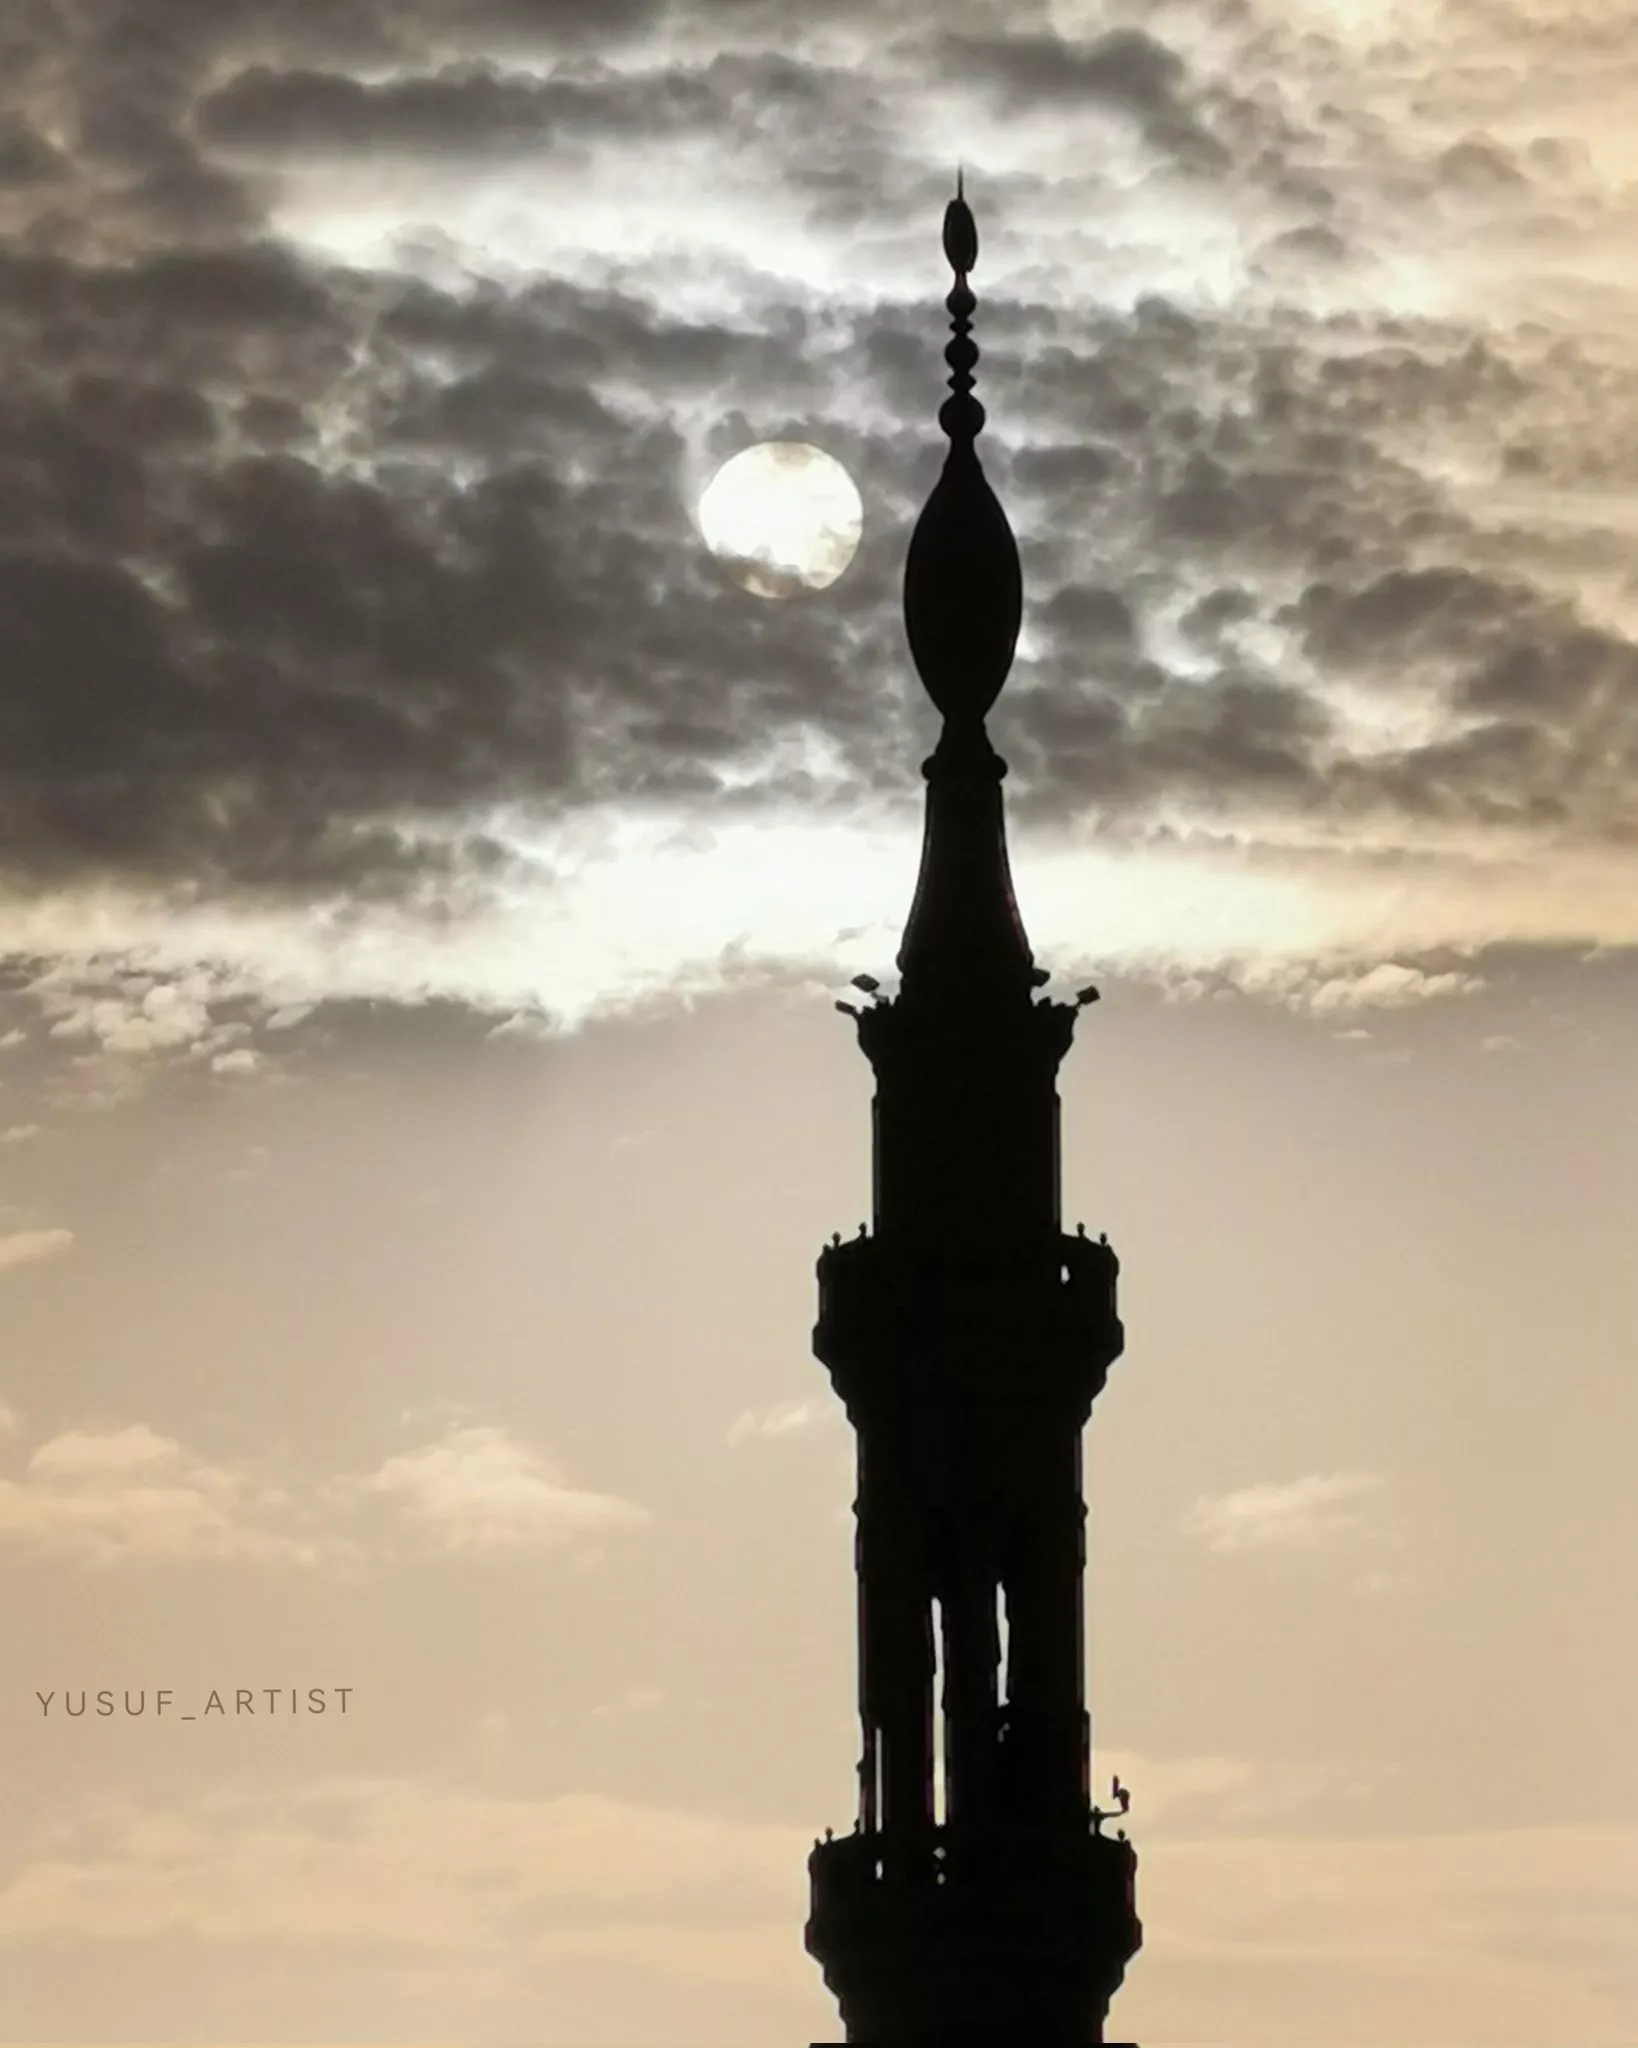 أجمل صور كسوف الشمس في مختلف الدول العربية